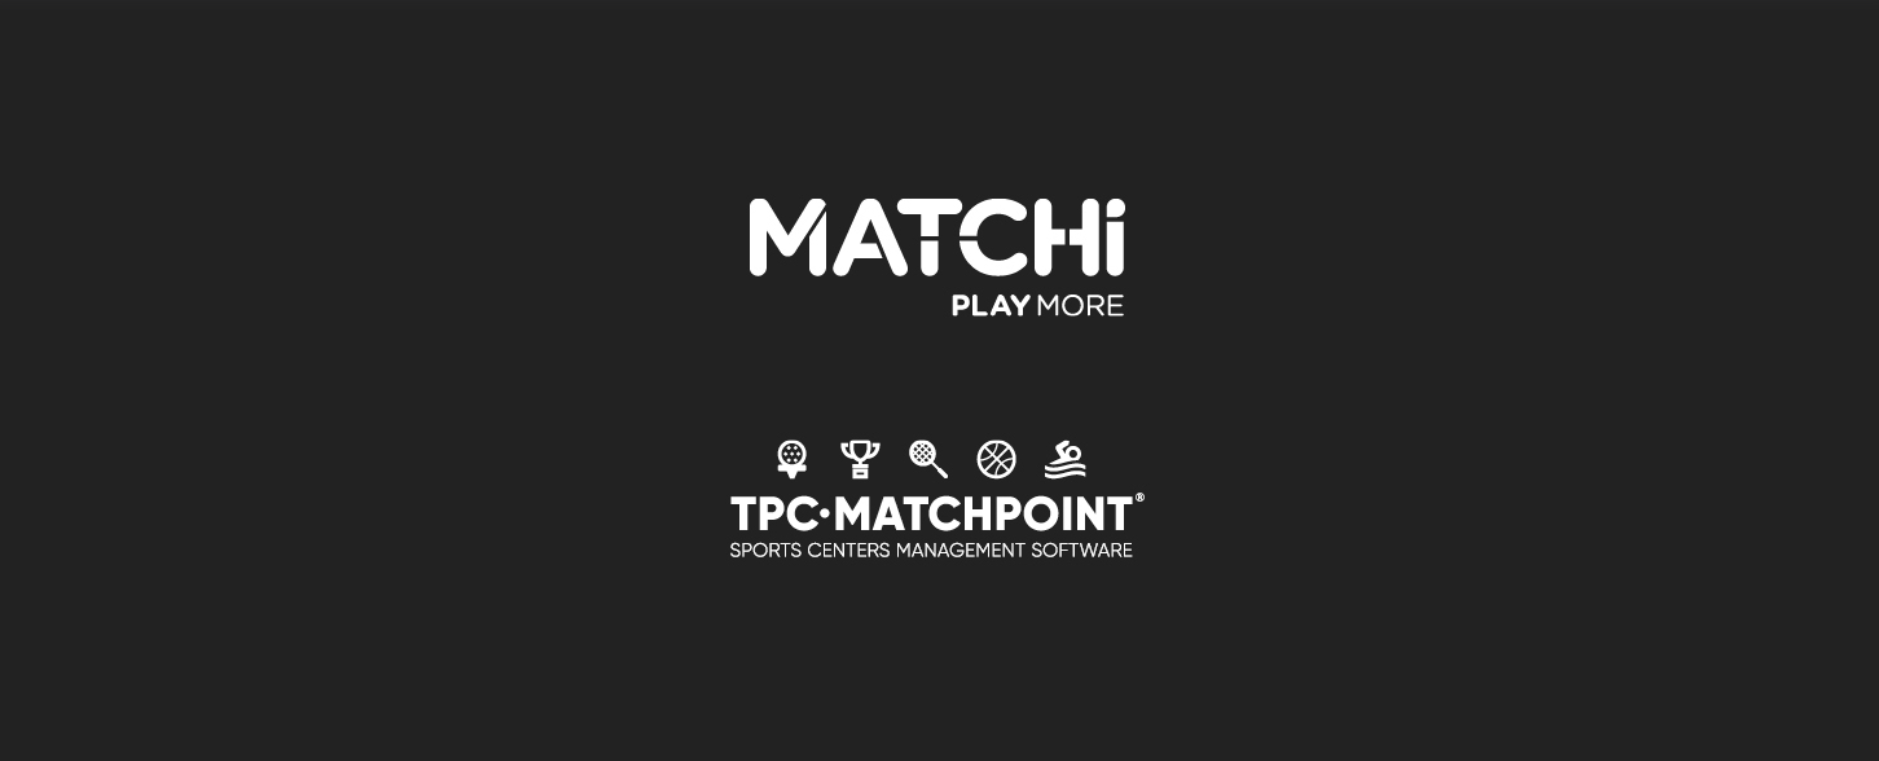 Matchi TPC Matchpoint Collaborazione